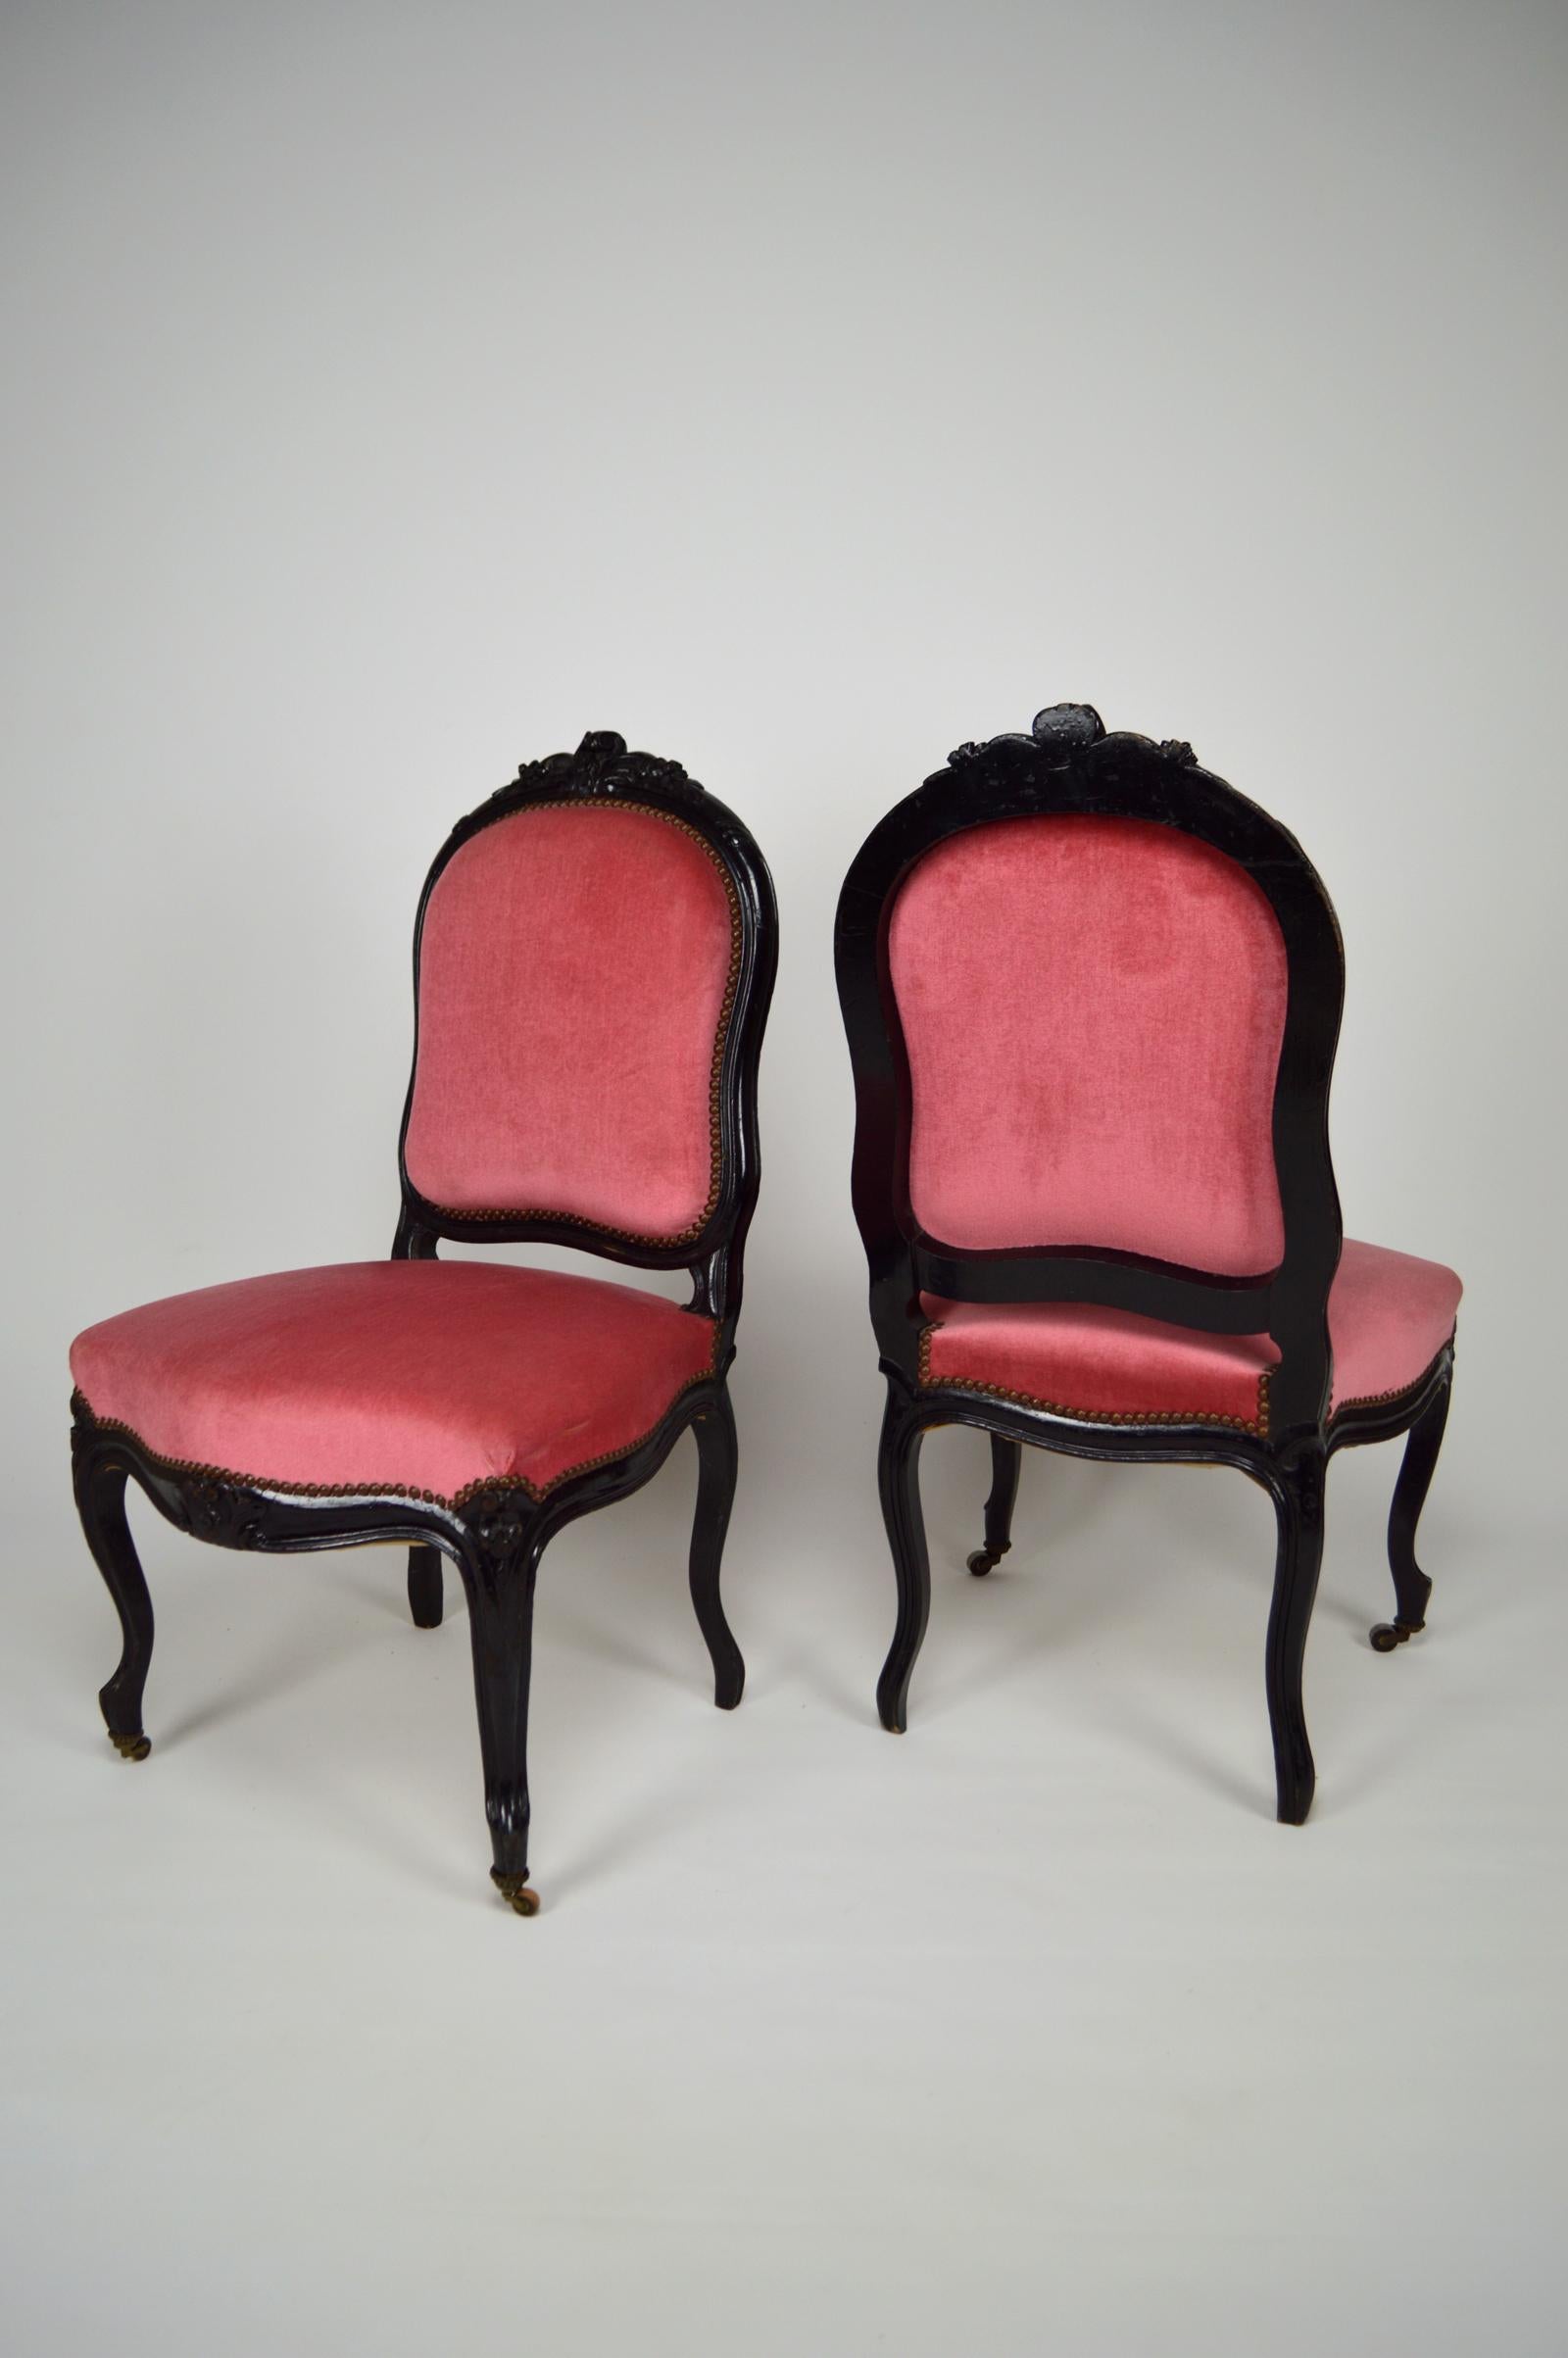 Wohnzimmerset bestehend aus einem alten Wohn-/Spieltisch und seinen zwei Stühlen.

Das Ganze ist aus geschwärztem Holz geschnitzt und hat ein florales Thema.
Die Sitzflächen und Rückenlehnen der Stühle sind mit einem rosa Samtstoff bezogen.
An